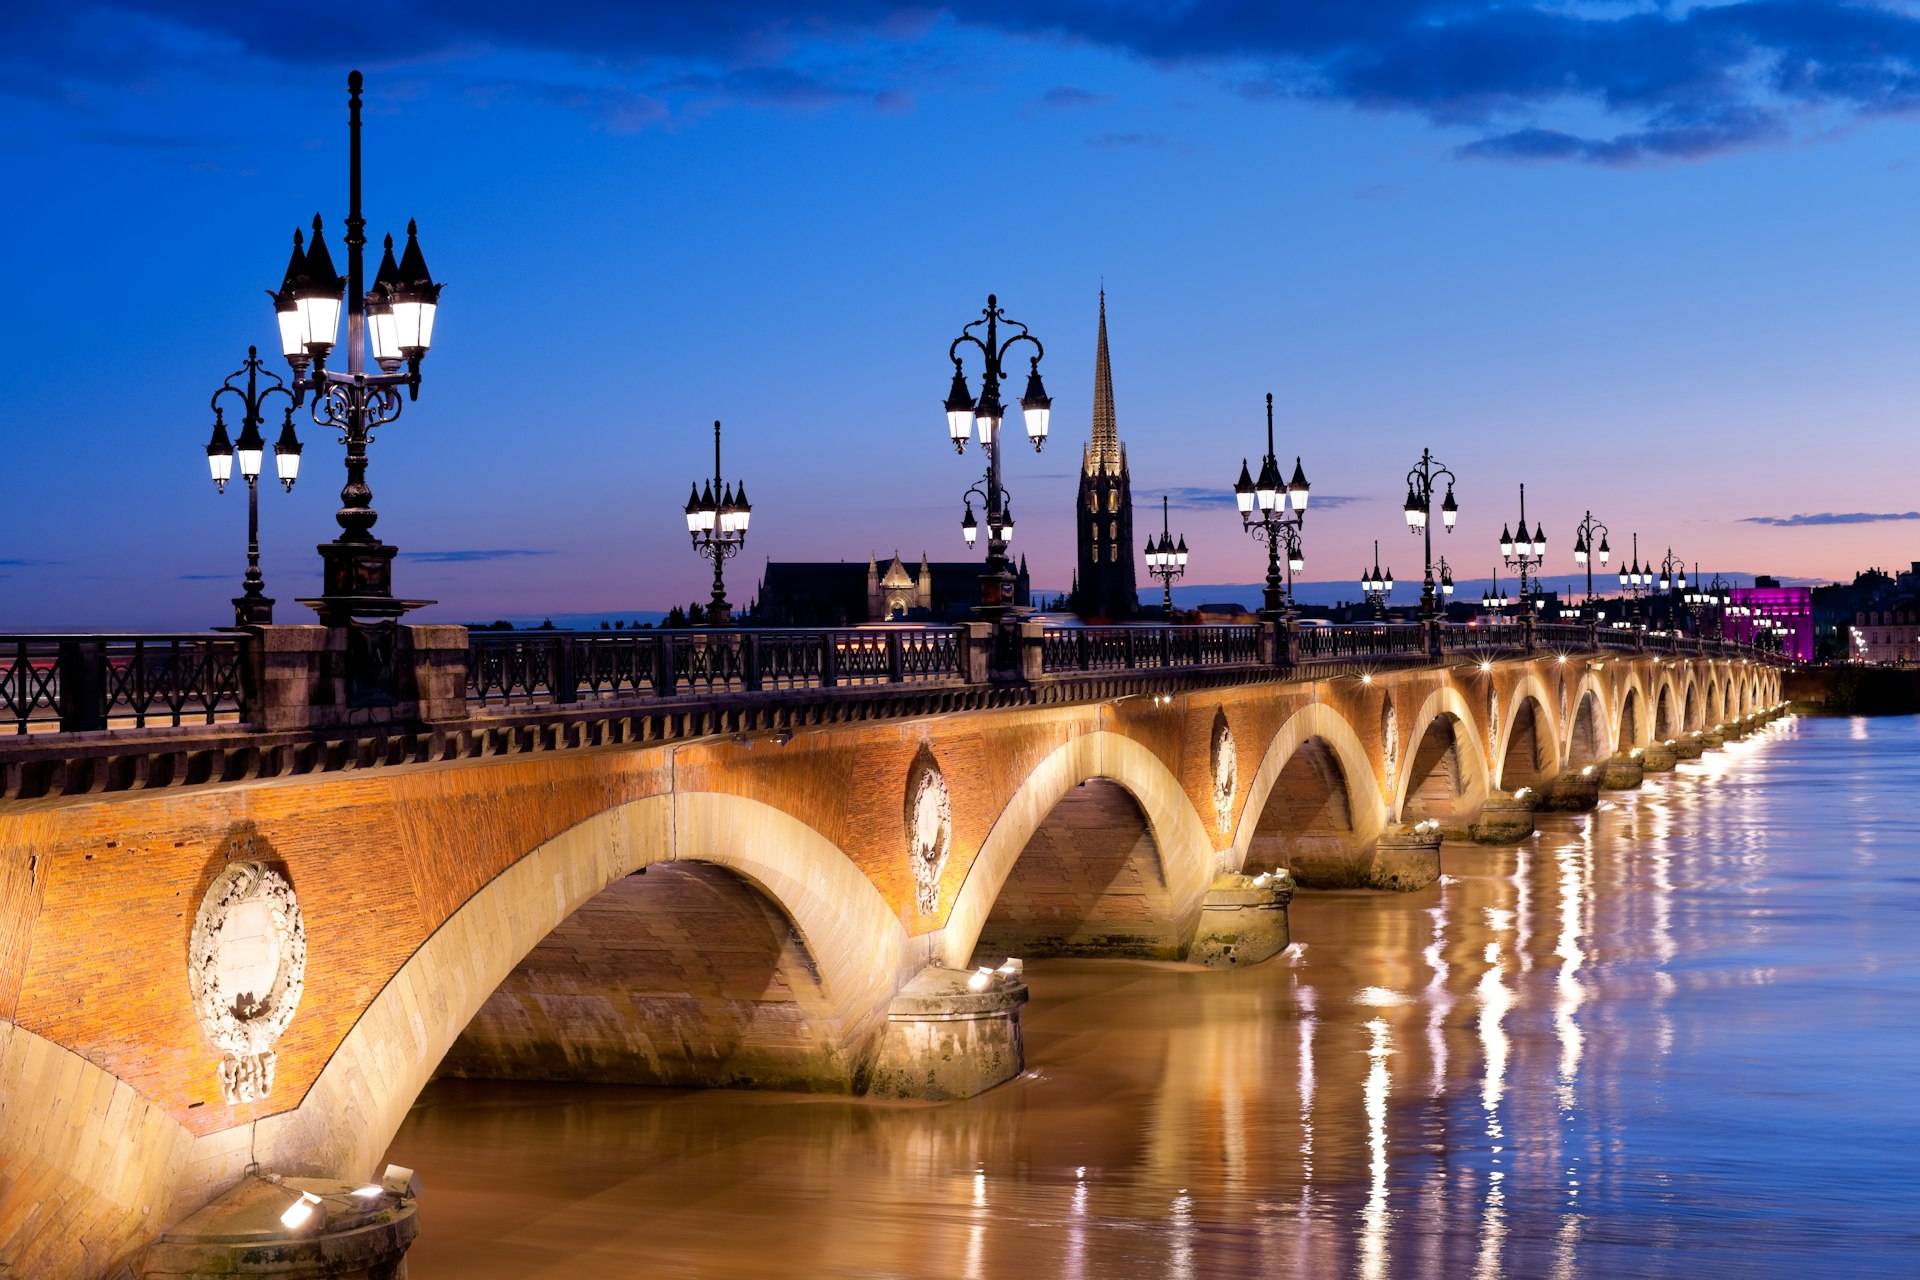 Cross Pont de pierre in Bordeaux for one of the city's best neighbourhoods